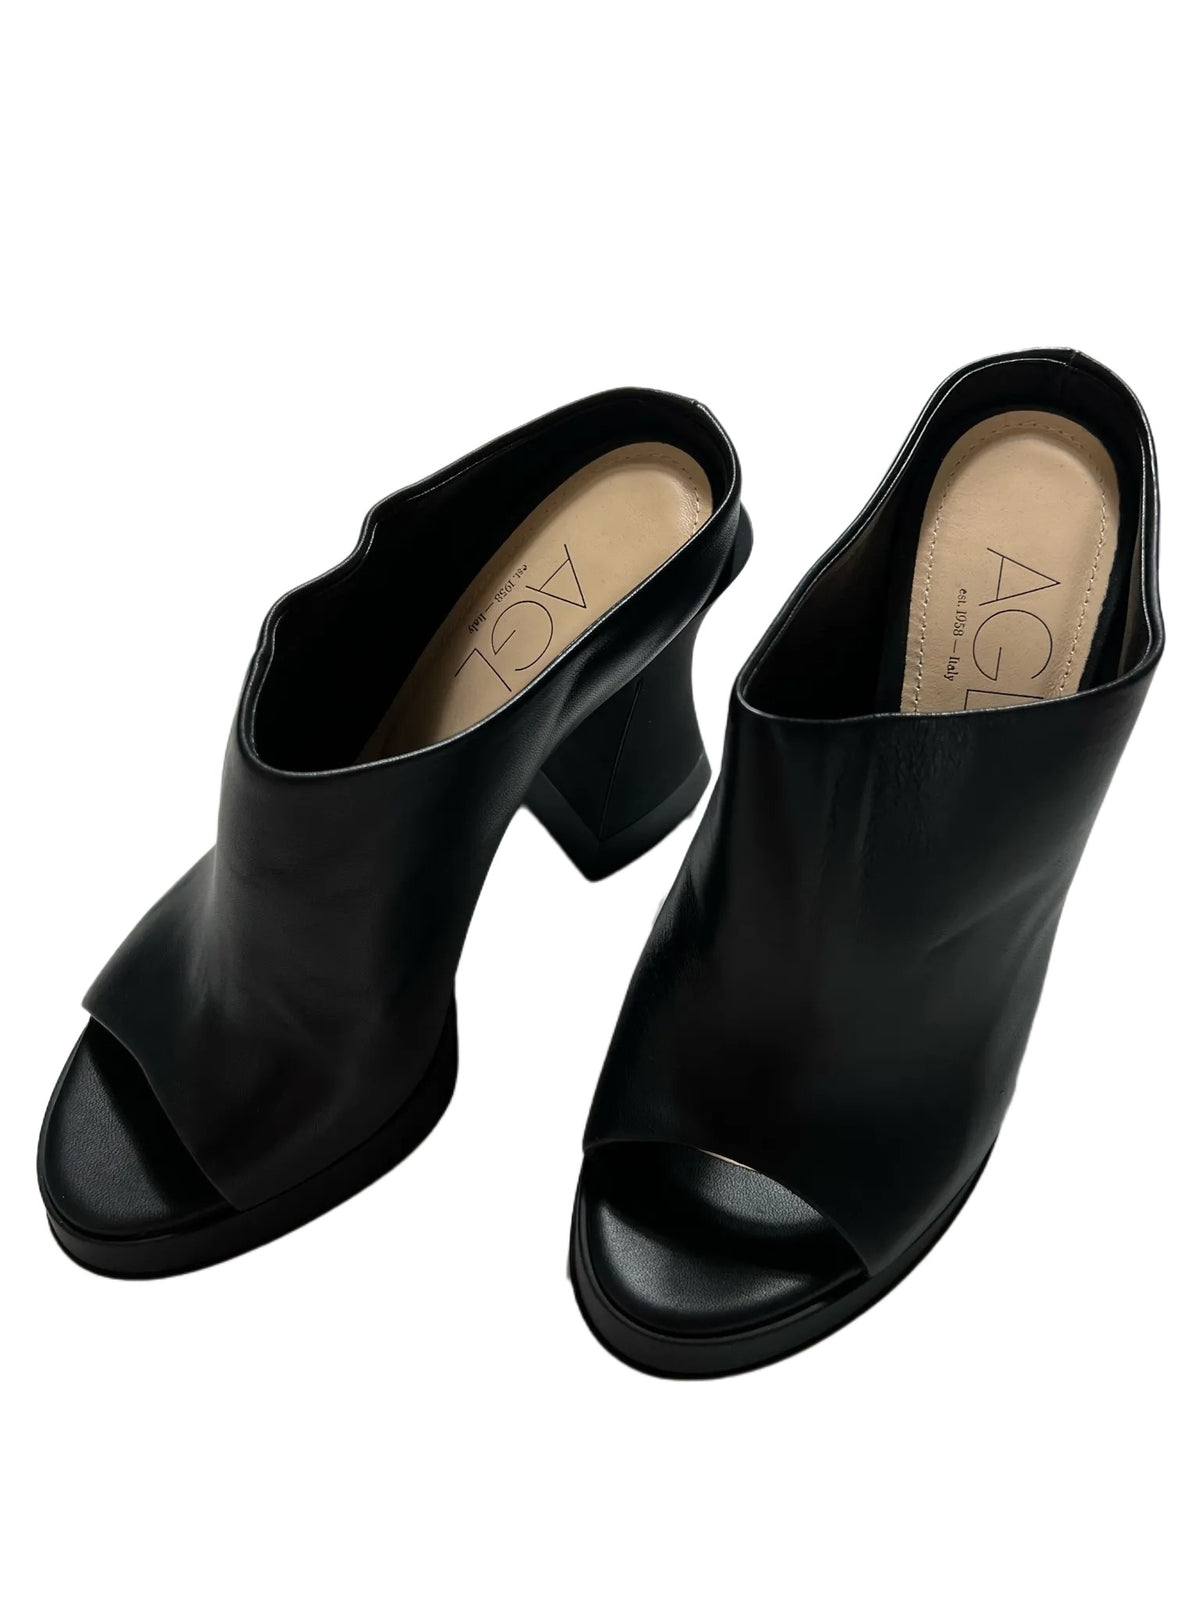 AGL- Black Open Toe Heels